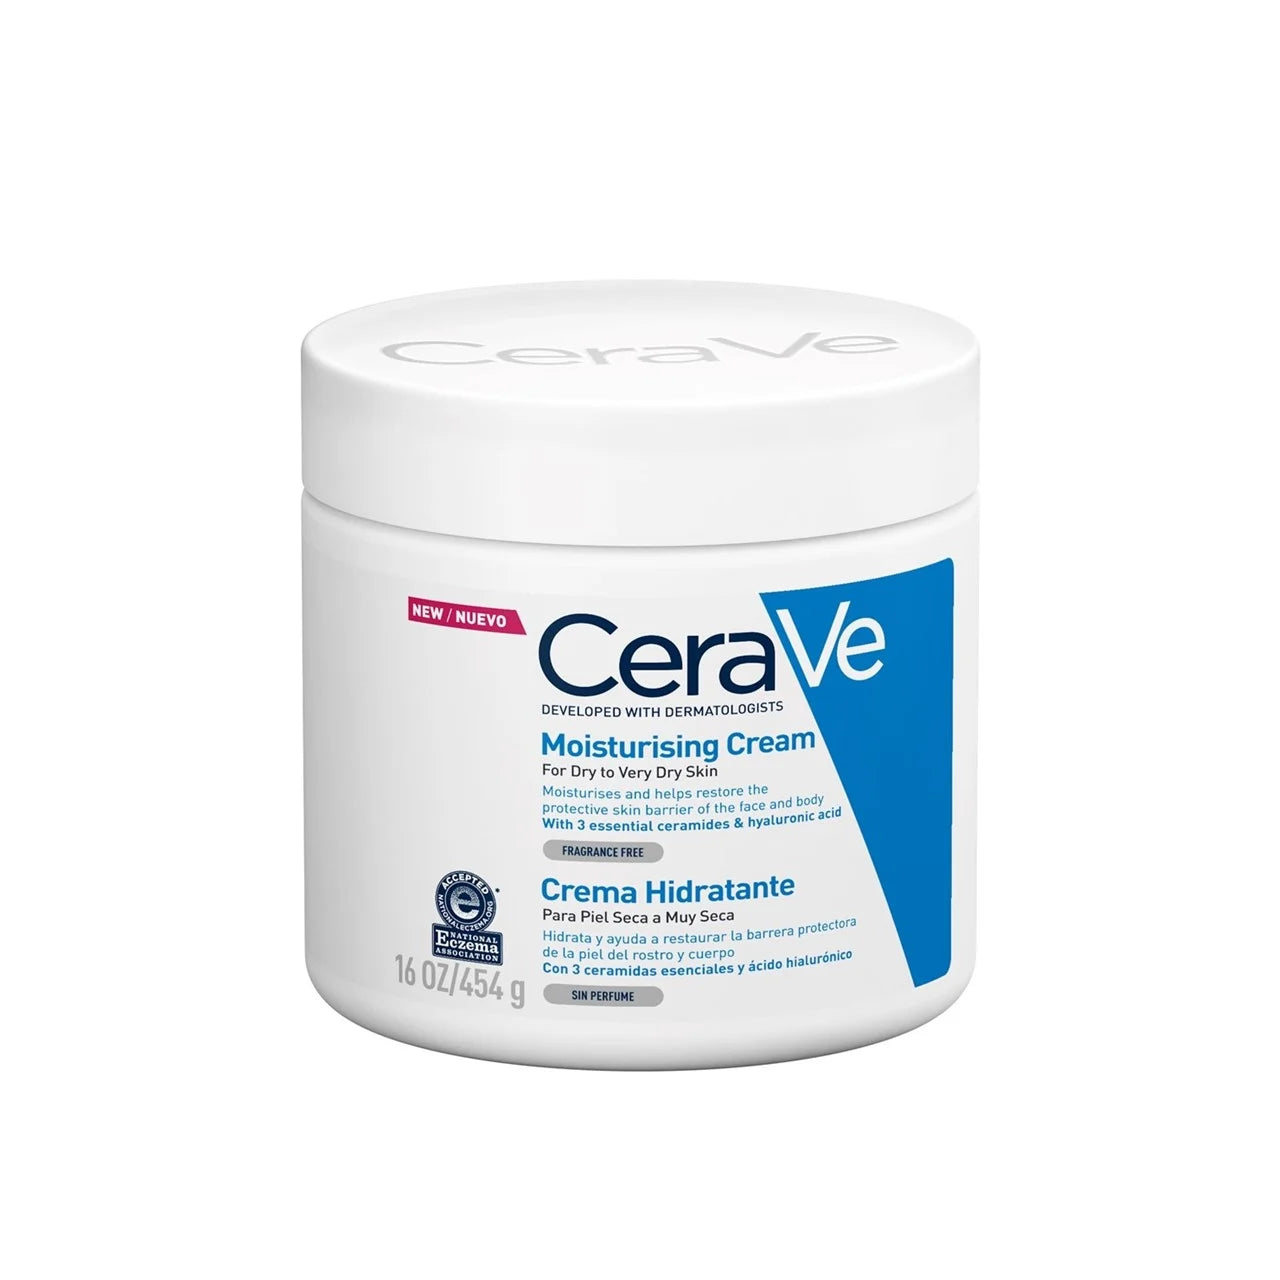 Cerave Moisturizing Cream for Dry to Very Dry Skin 16 OZ | Makeupstash Pakistan